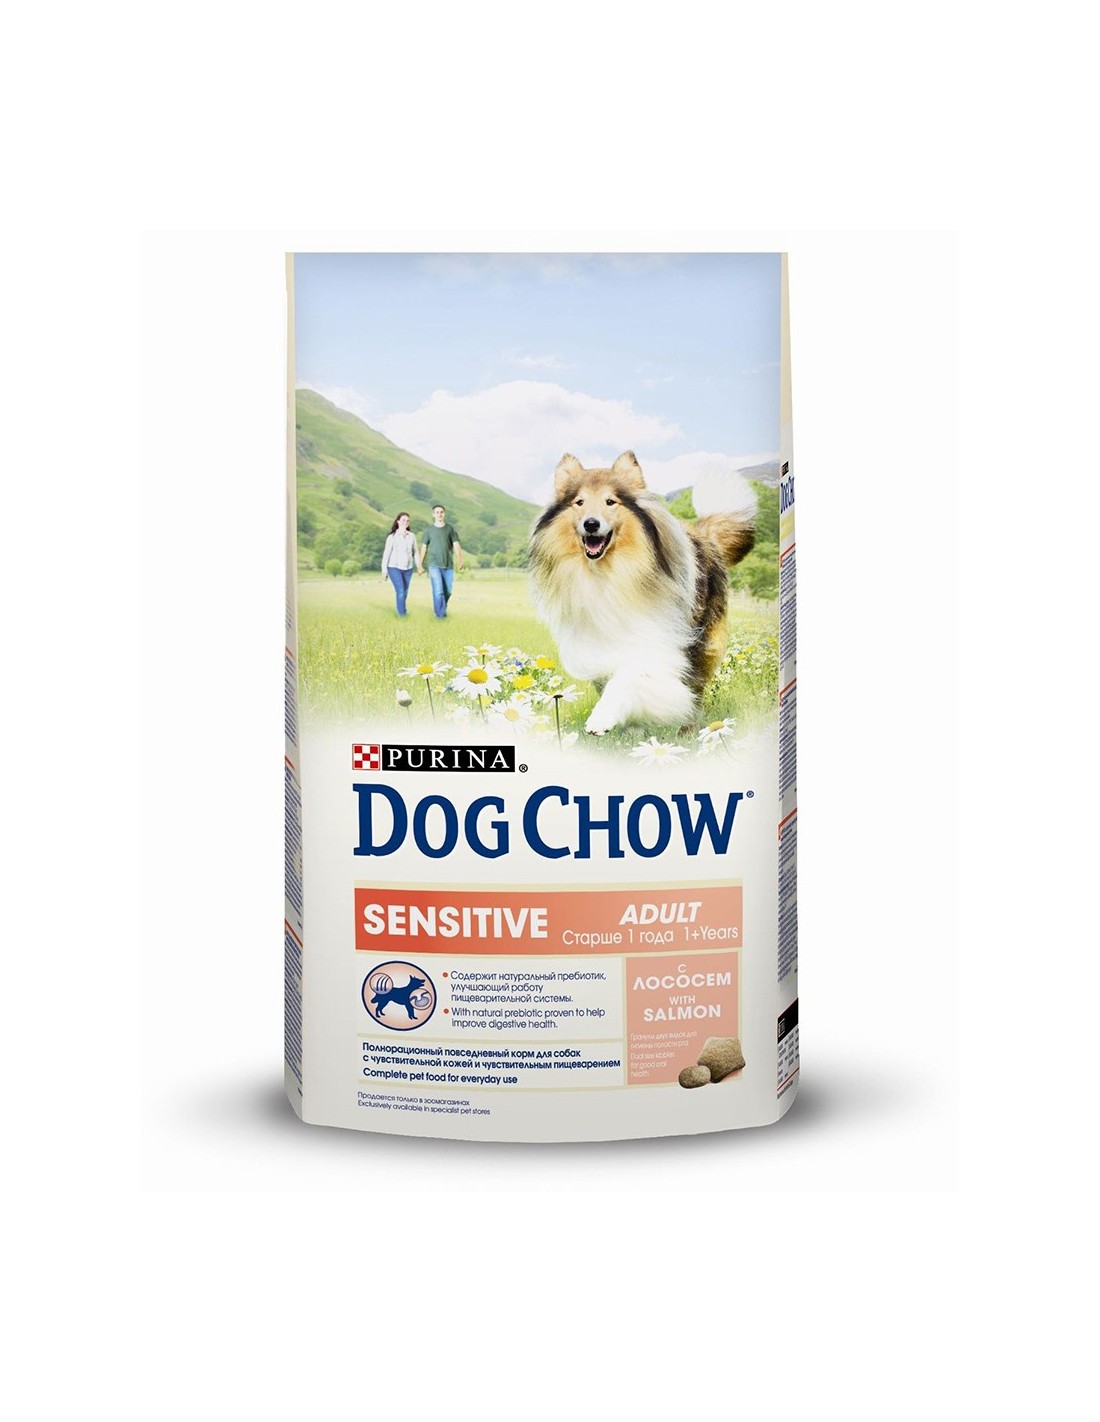 Купить корм для собаки 14 кг. Dog Chow 14 кг лосось. Dog Chow sensitive 14 кг лосось. Пурина дог чау. Корм для собак Dog Chow 14 кг.